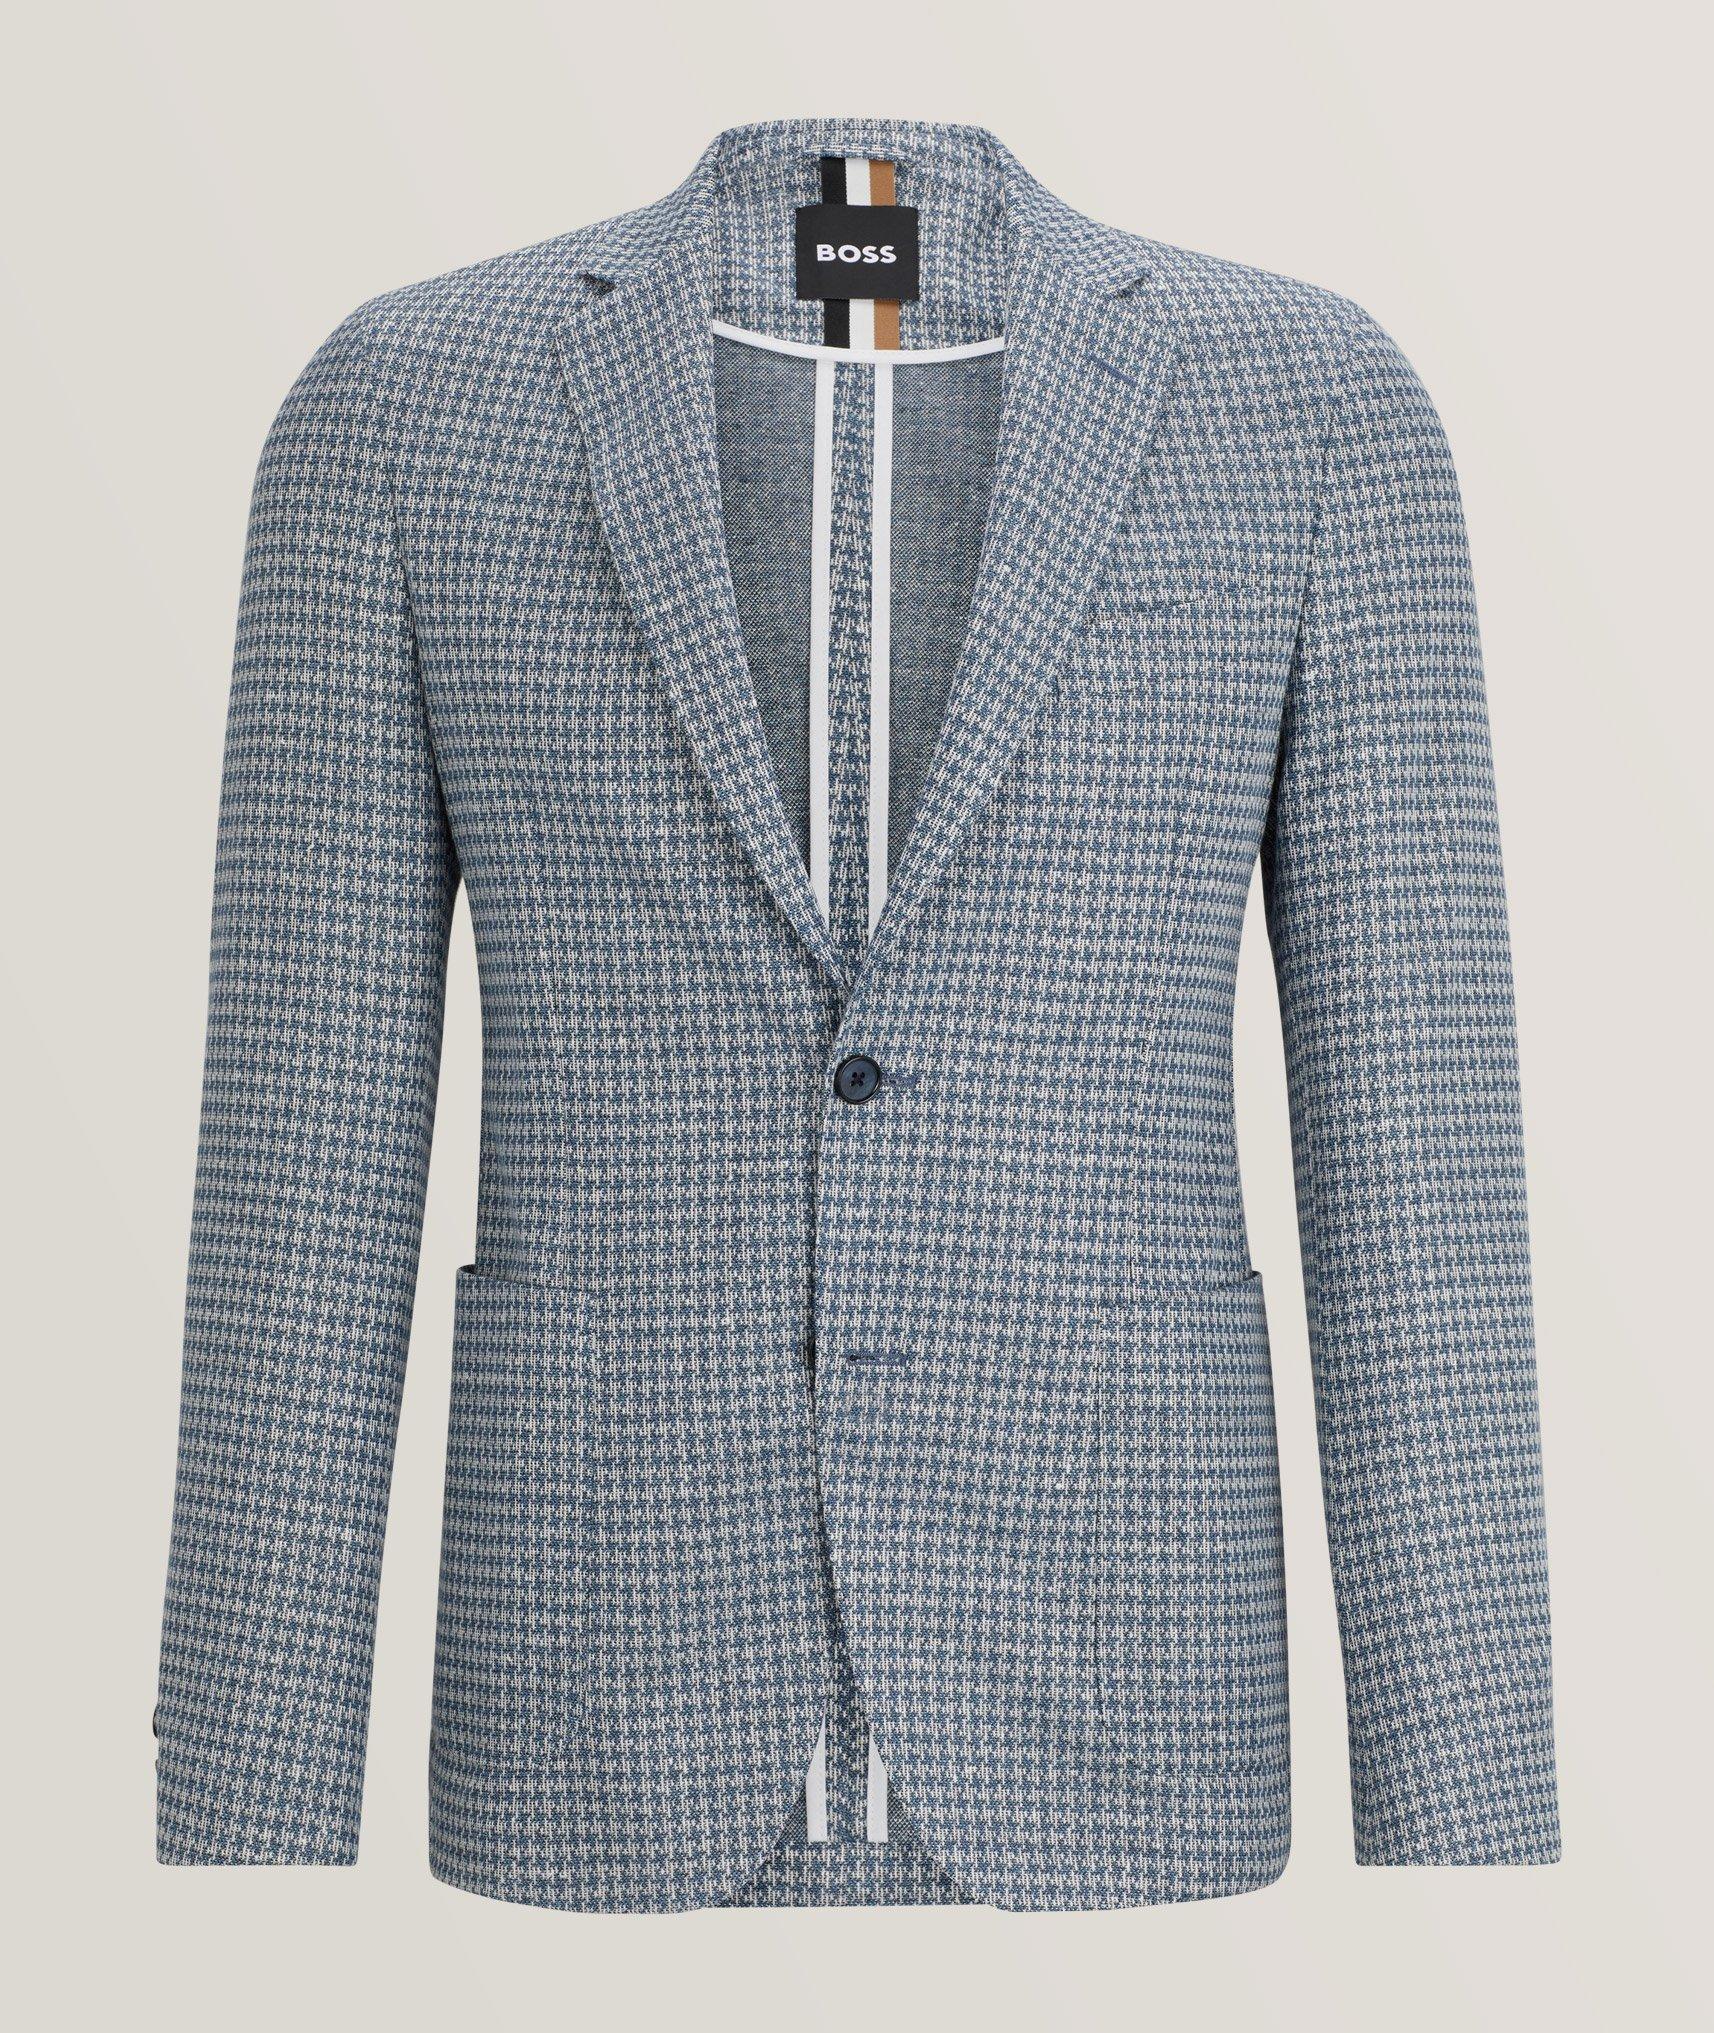 BOSS Hanry Neat Pattern Linen-Blend Sport Jacket